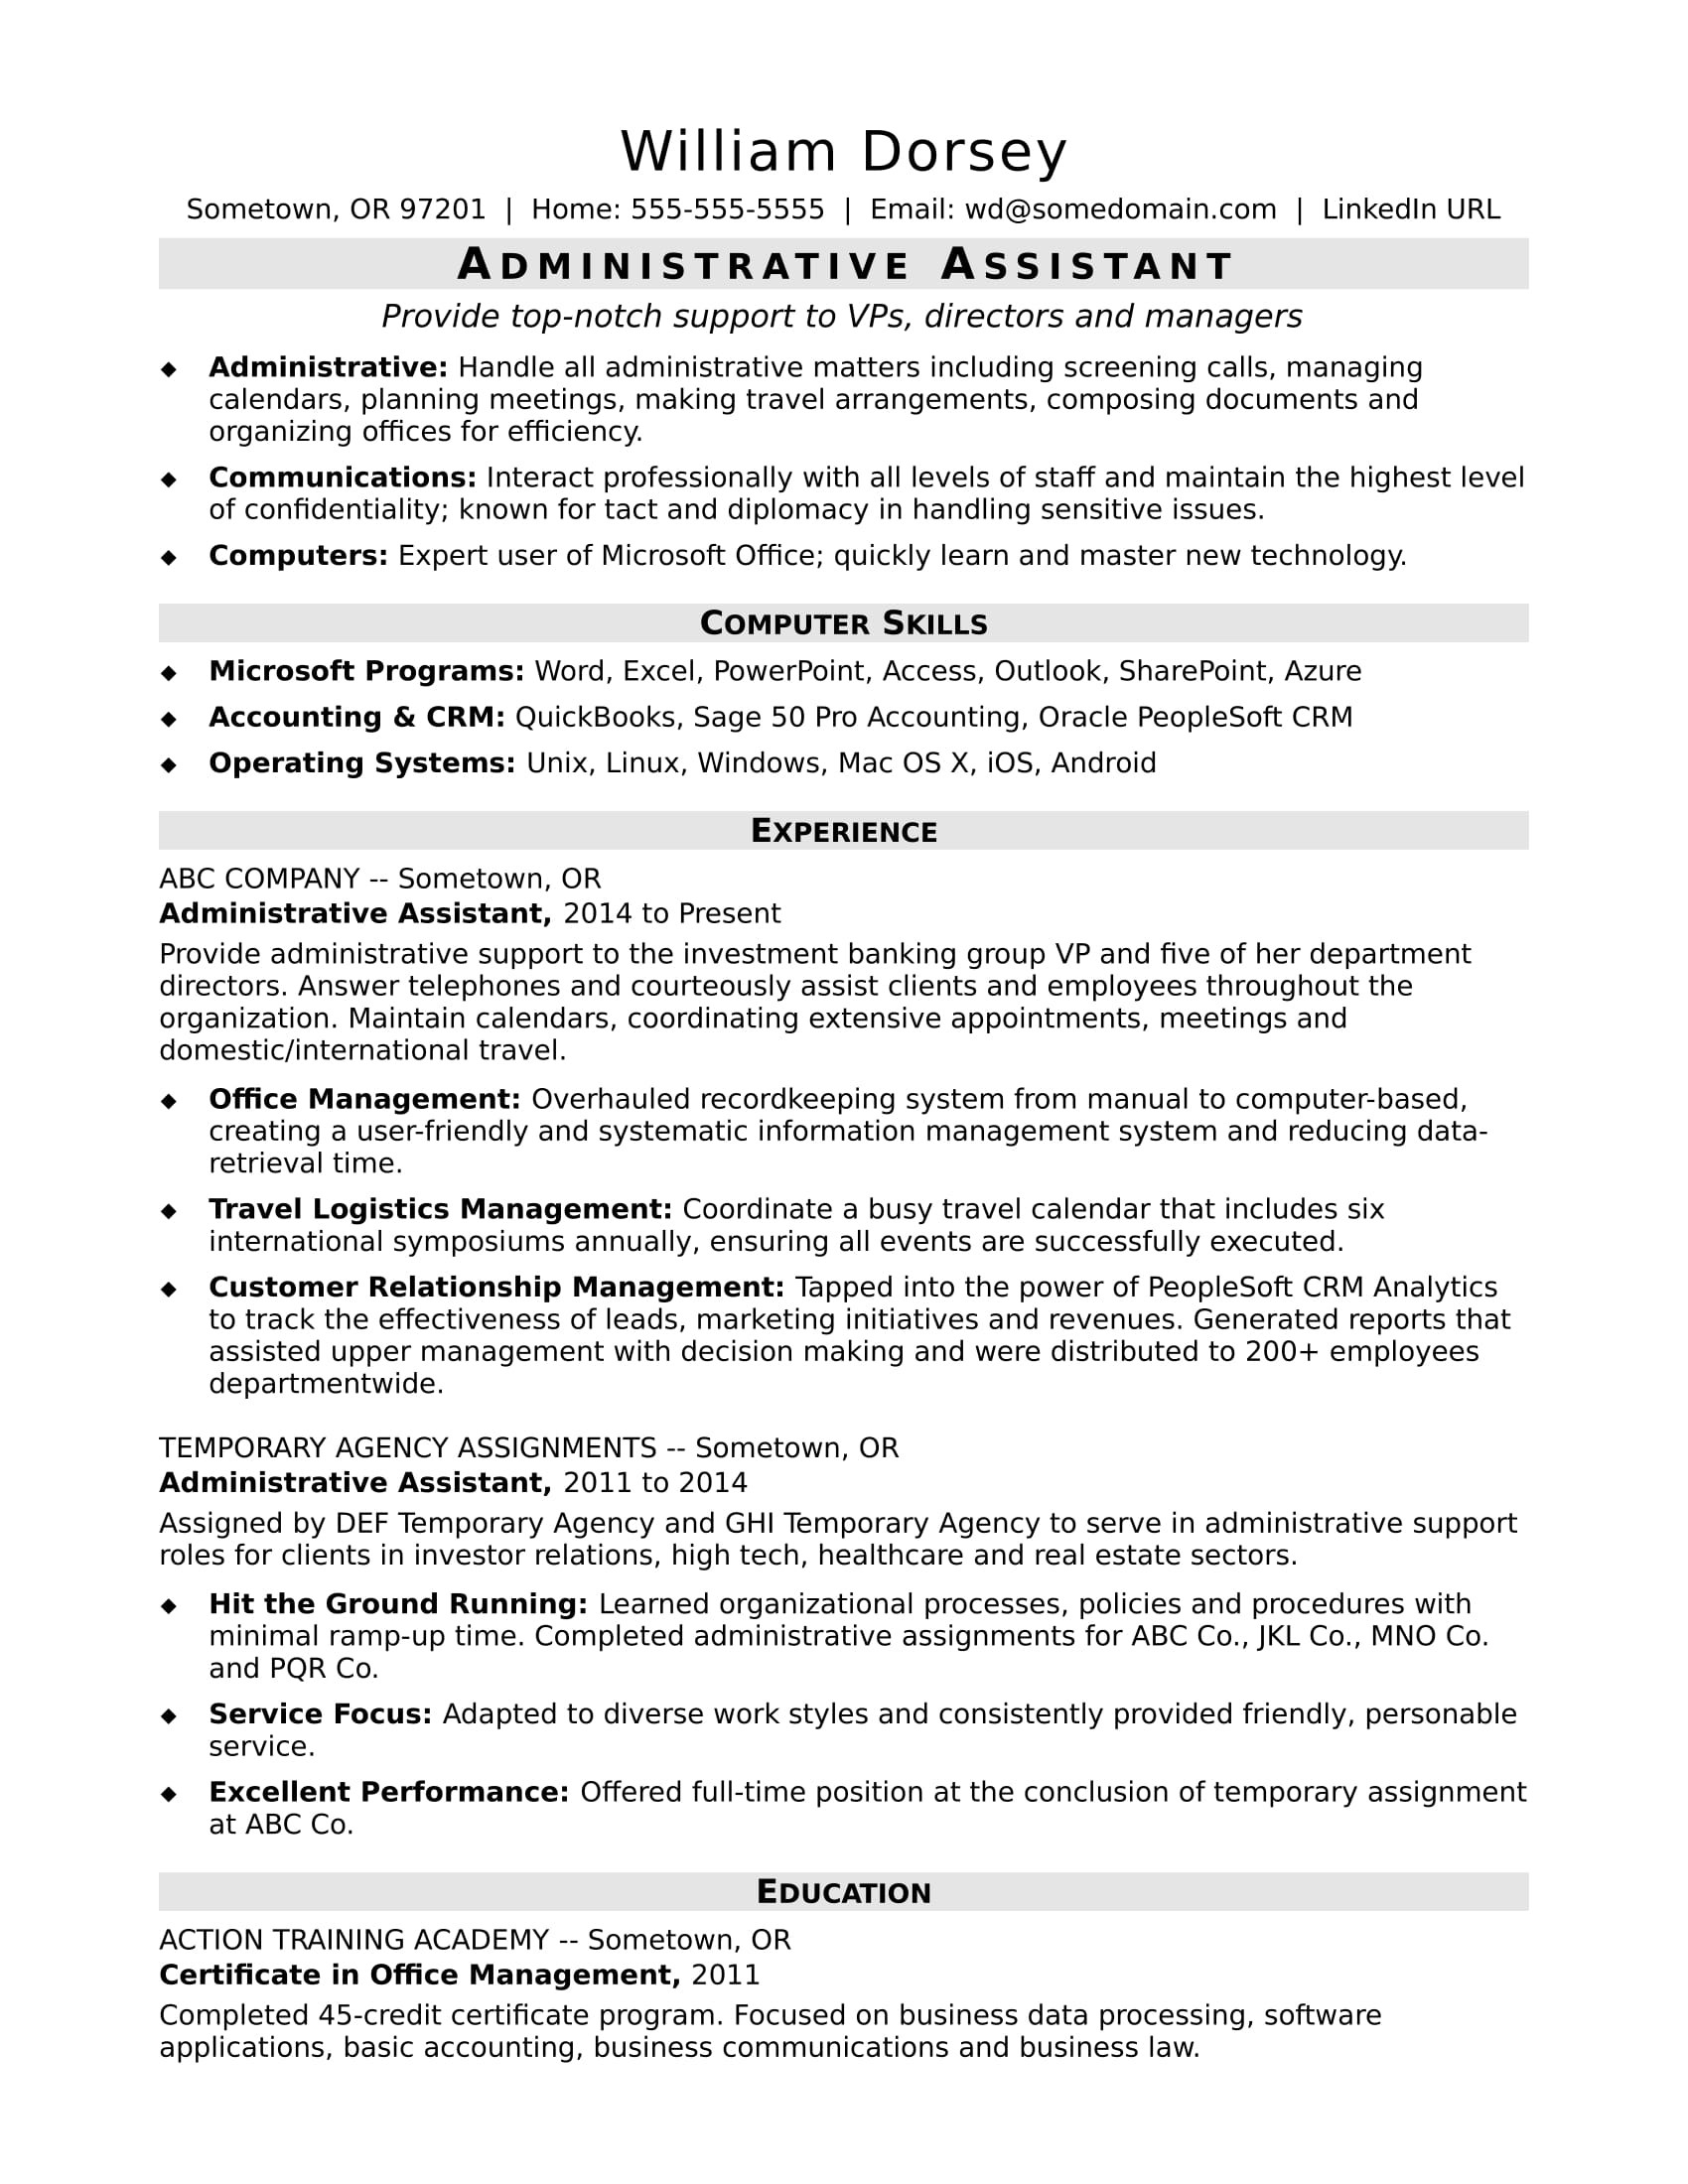 High Level Administrative assistant Resume Sample Administrative assistant Resume Sample Monster.com